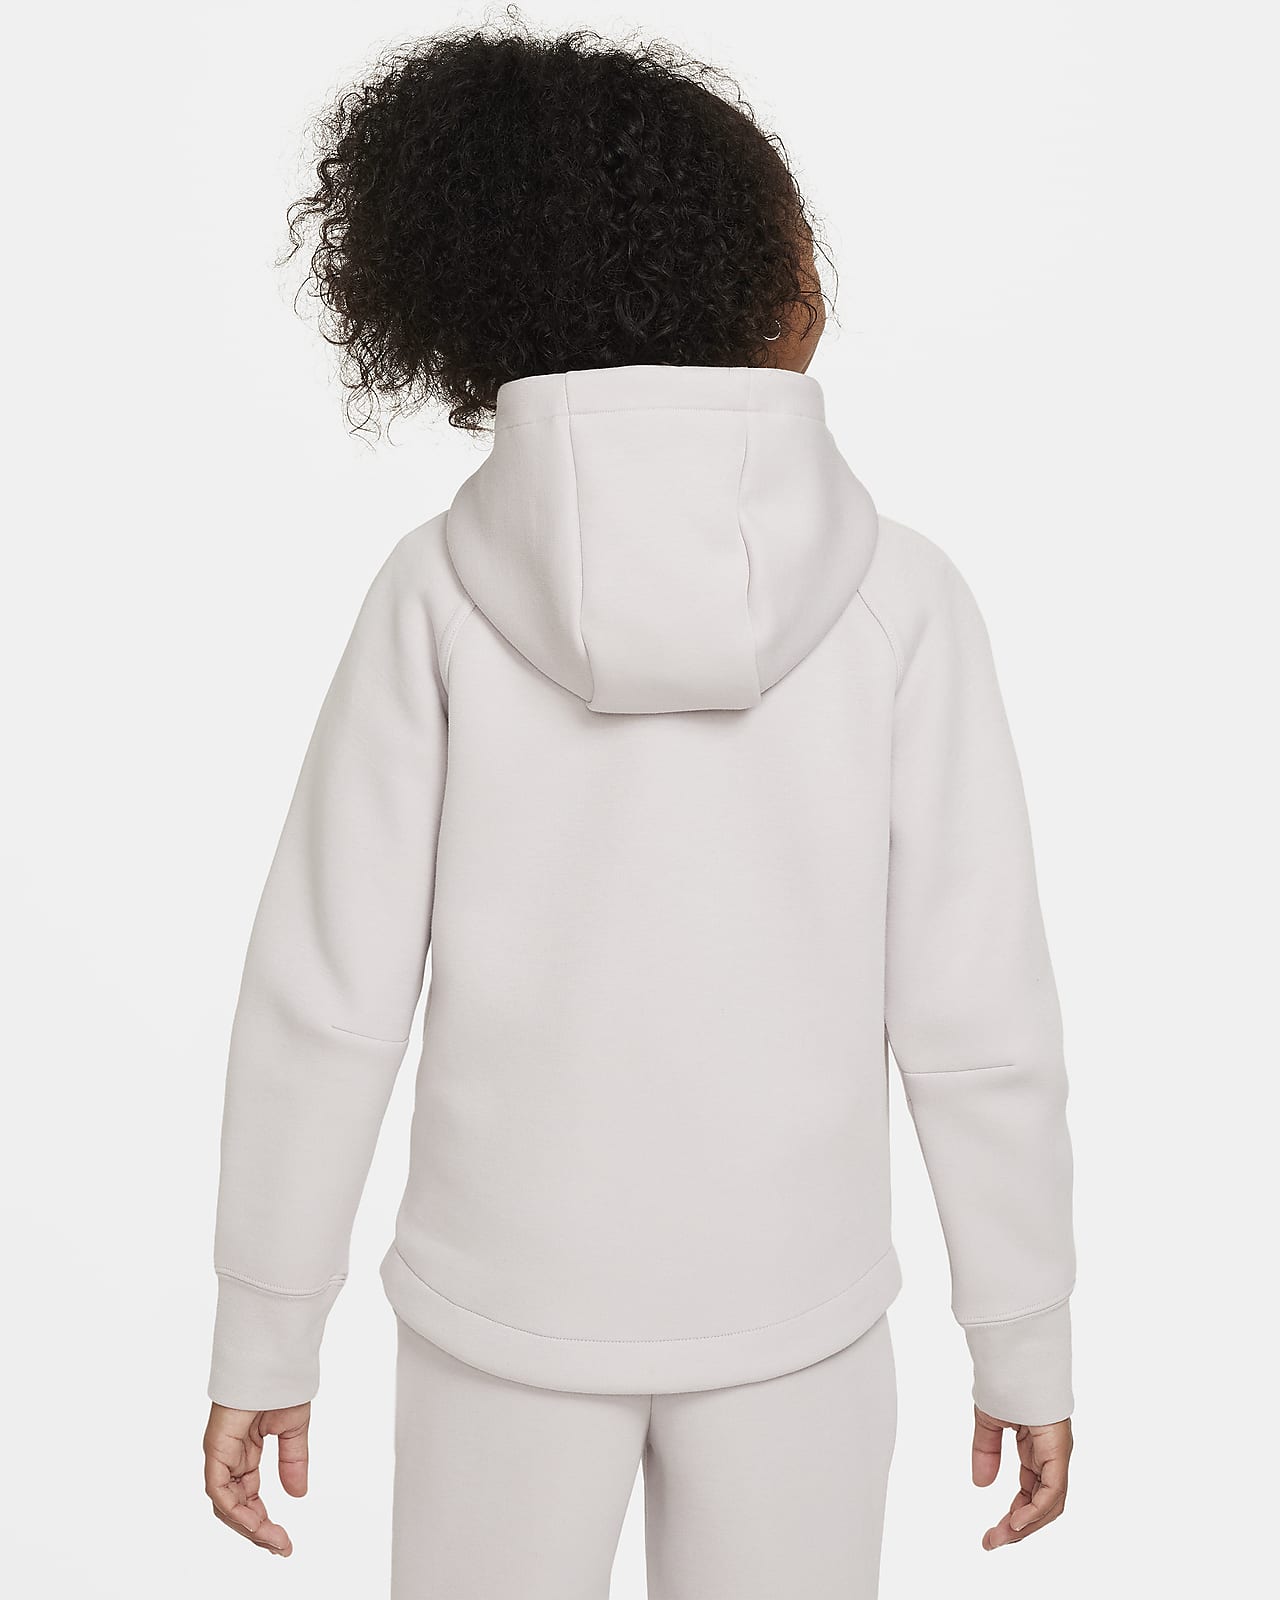 Nike Sportswear Kids' Tech Fleece Hoodie White/Dutch Green